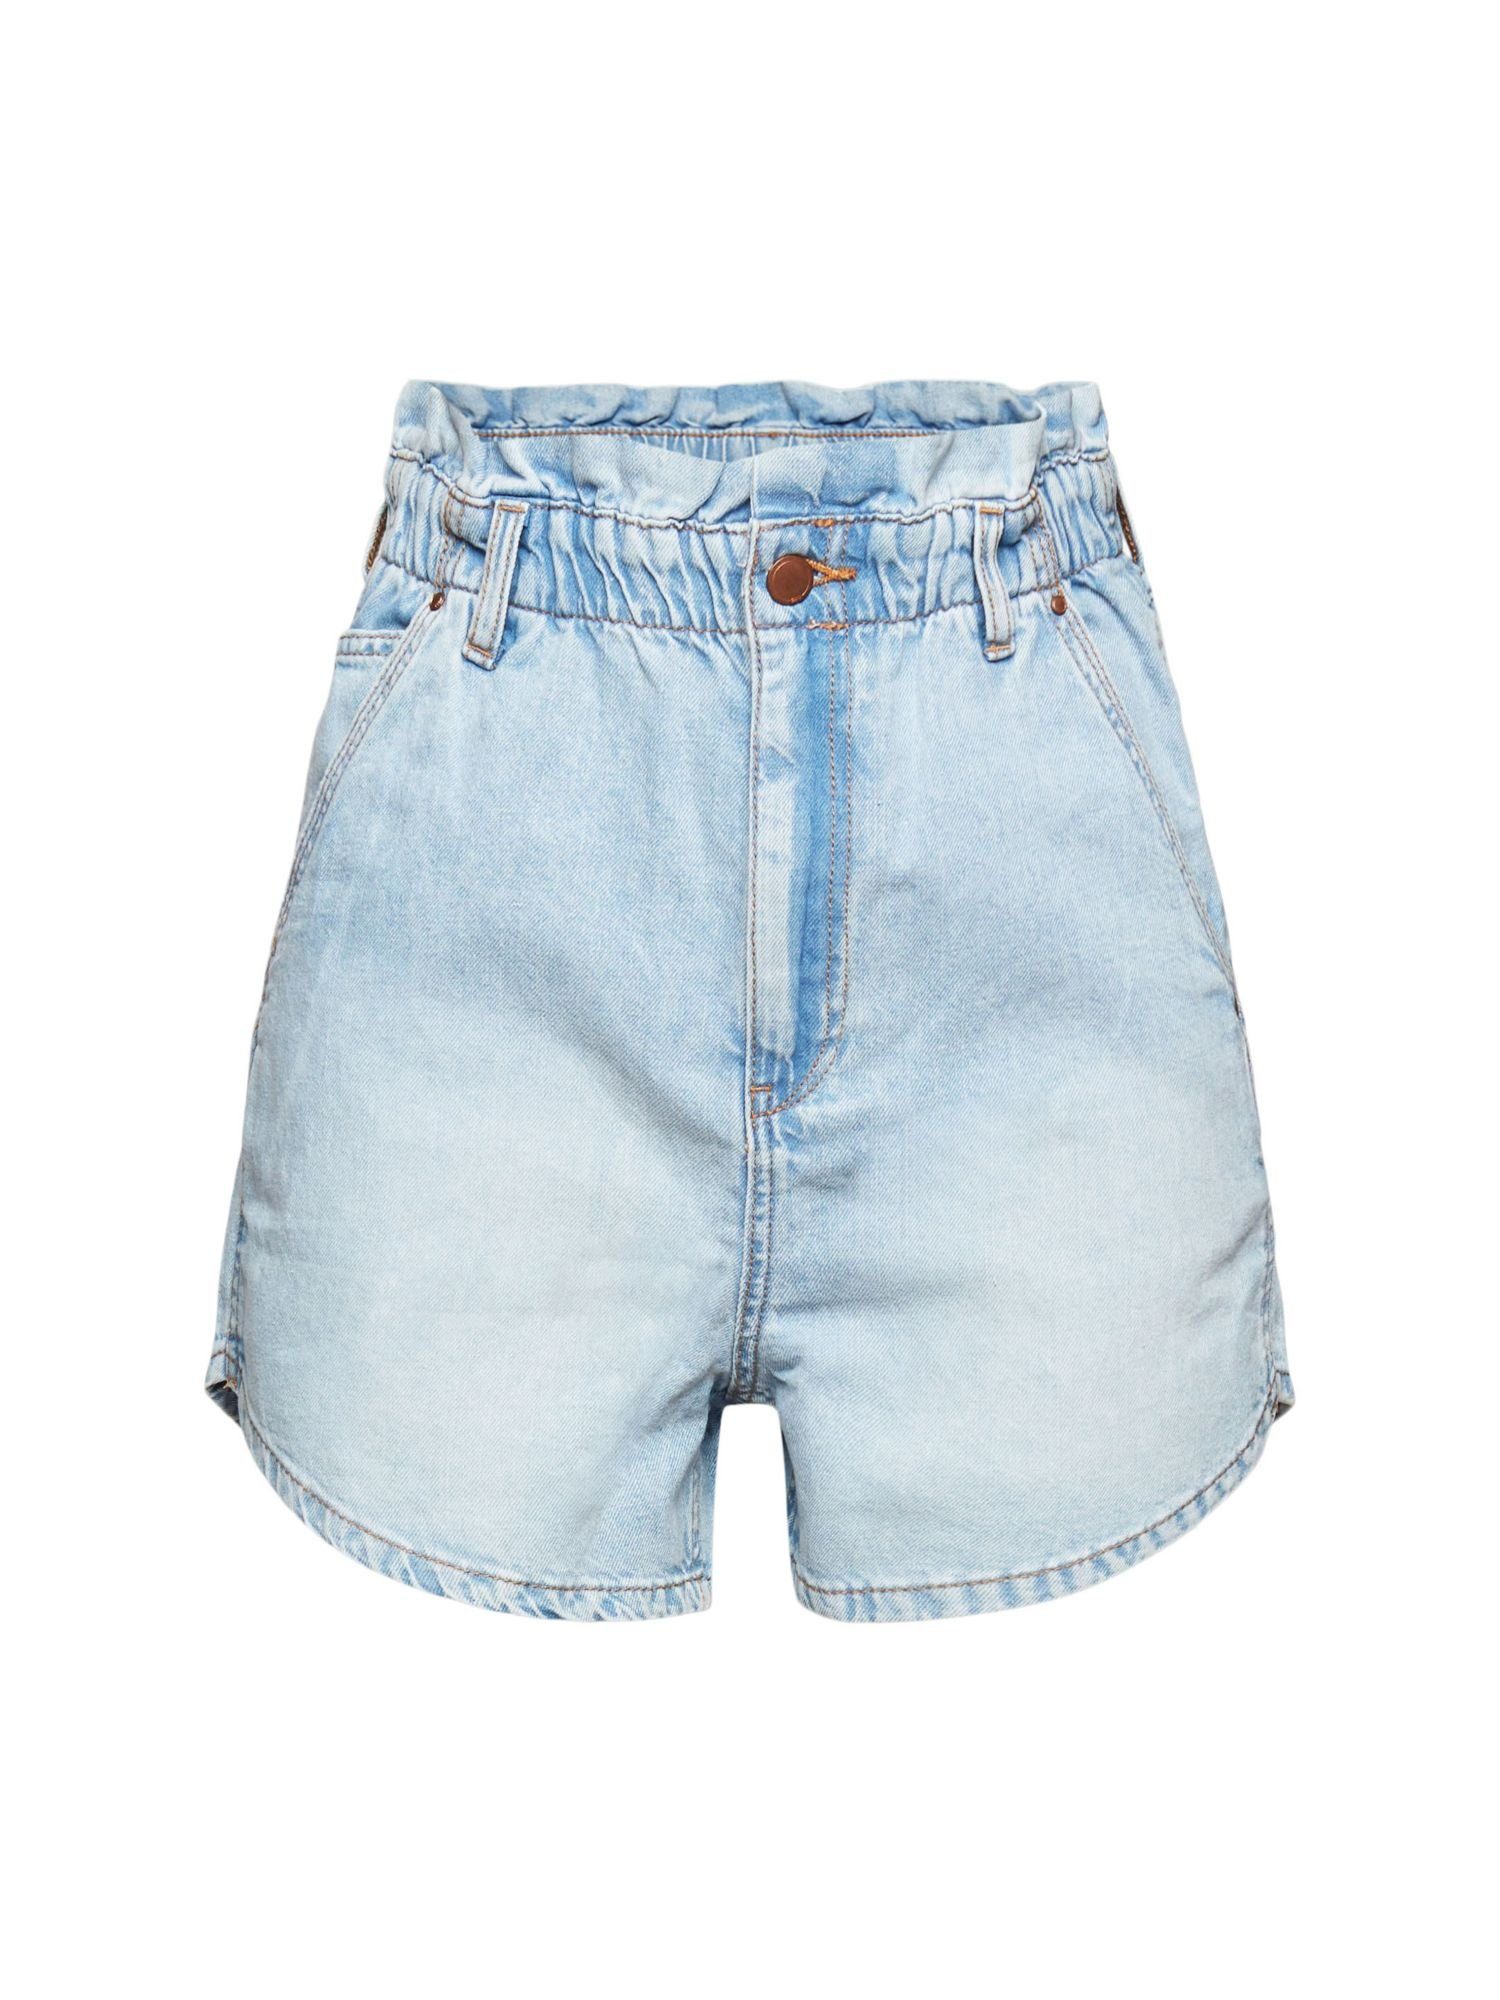 Esprit Damen-Shorts online kaufen | OTTO